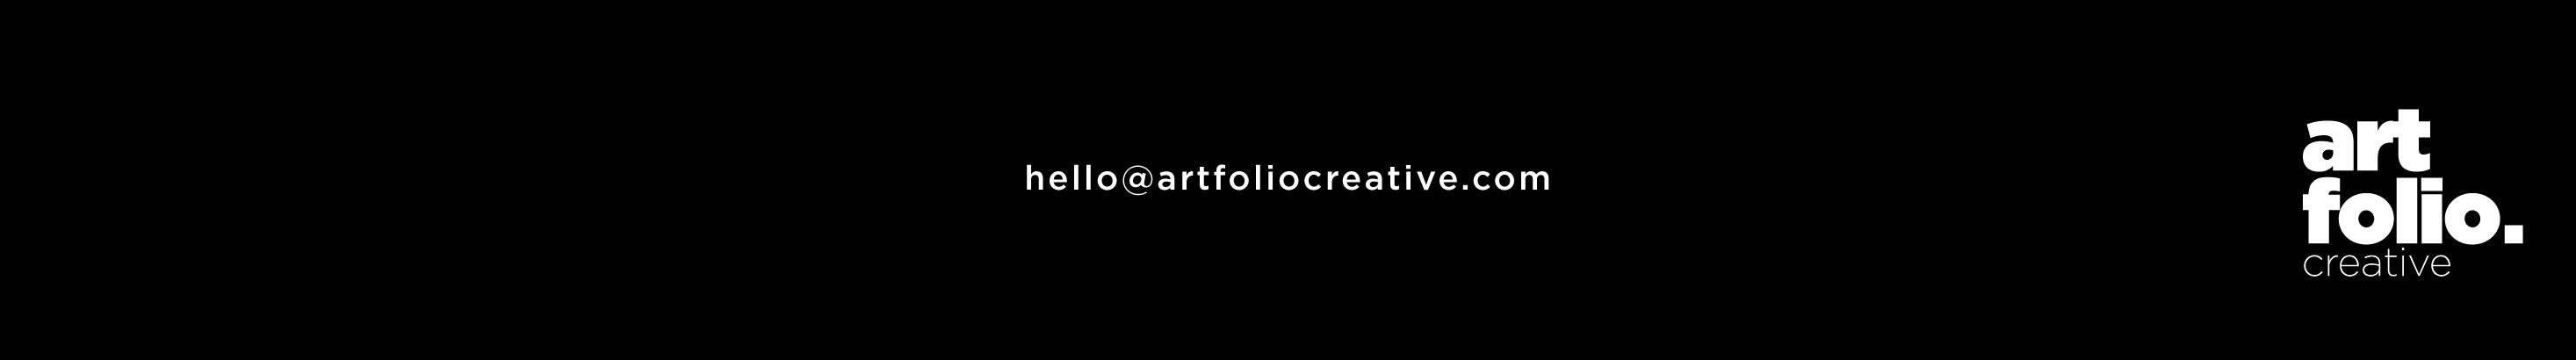 Artfolio Creative's profile banner